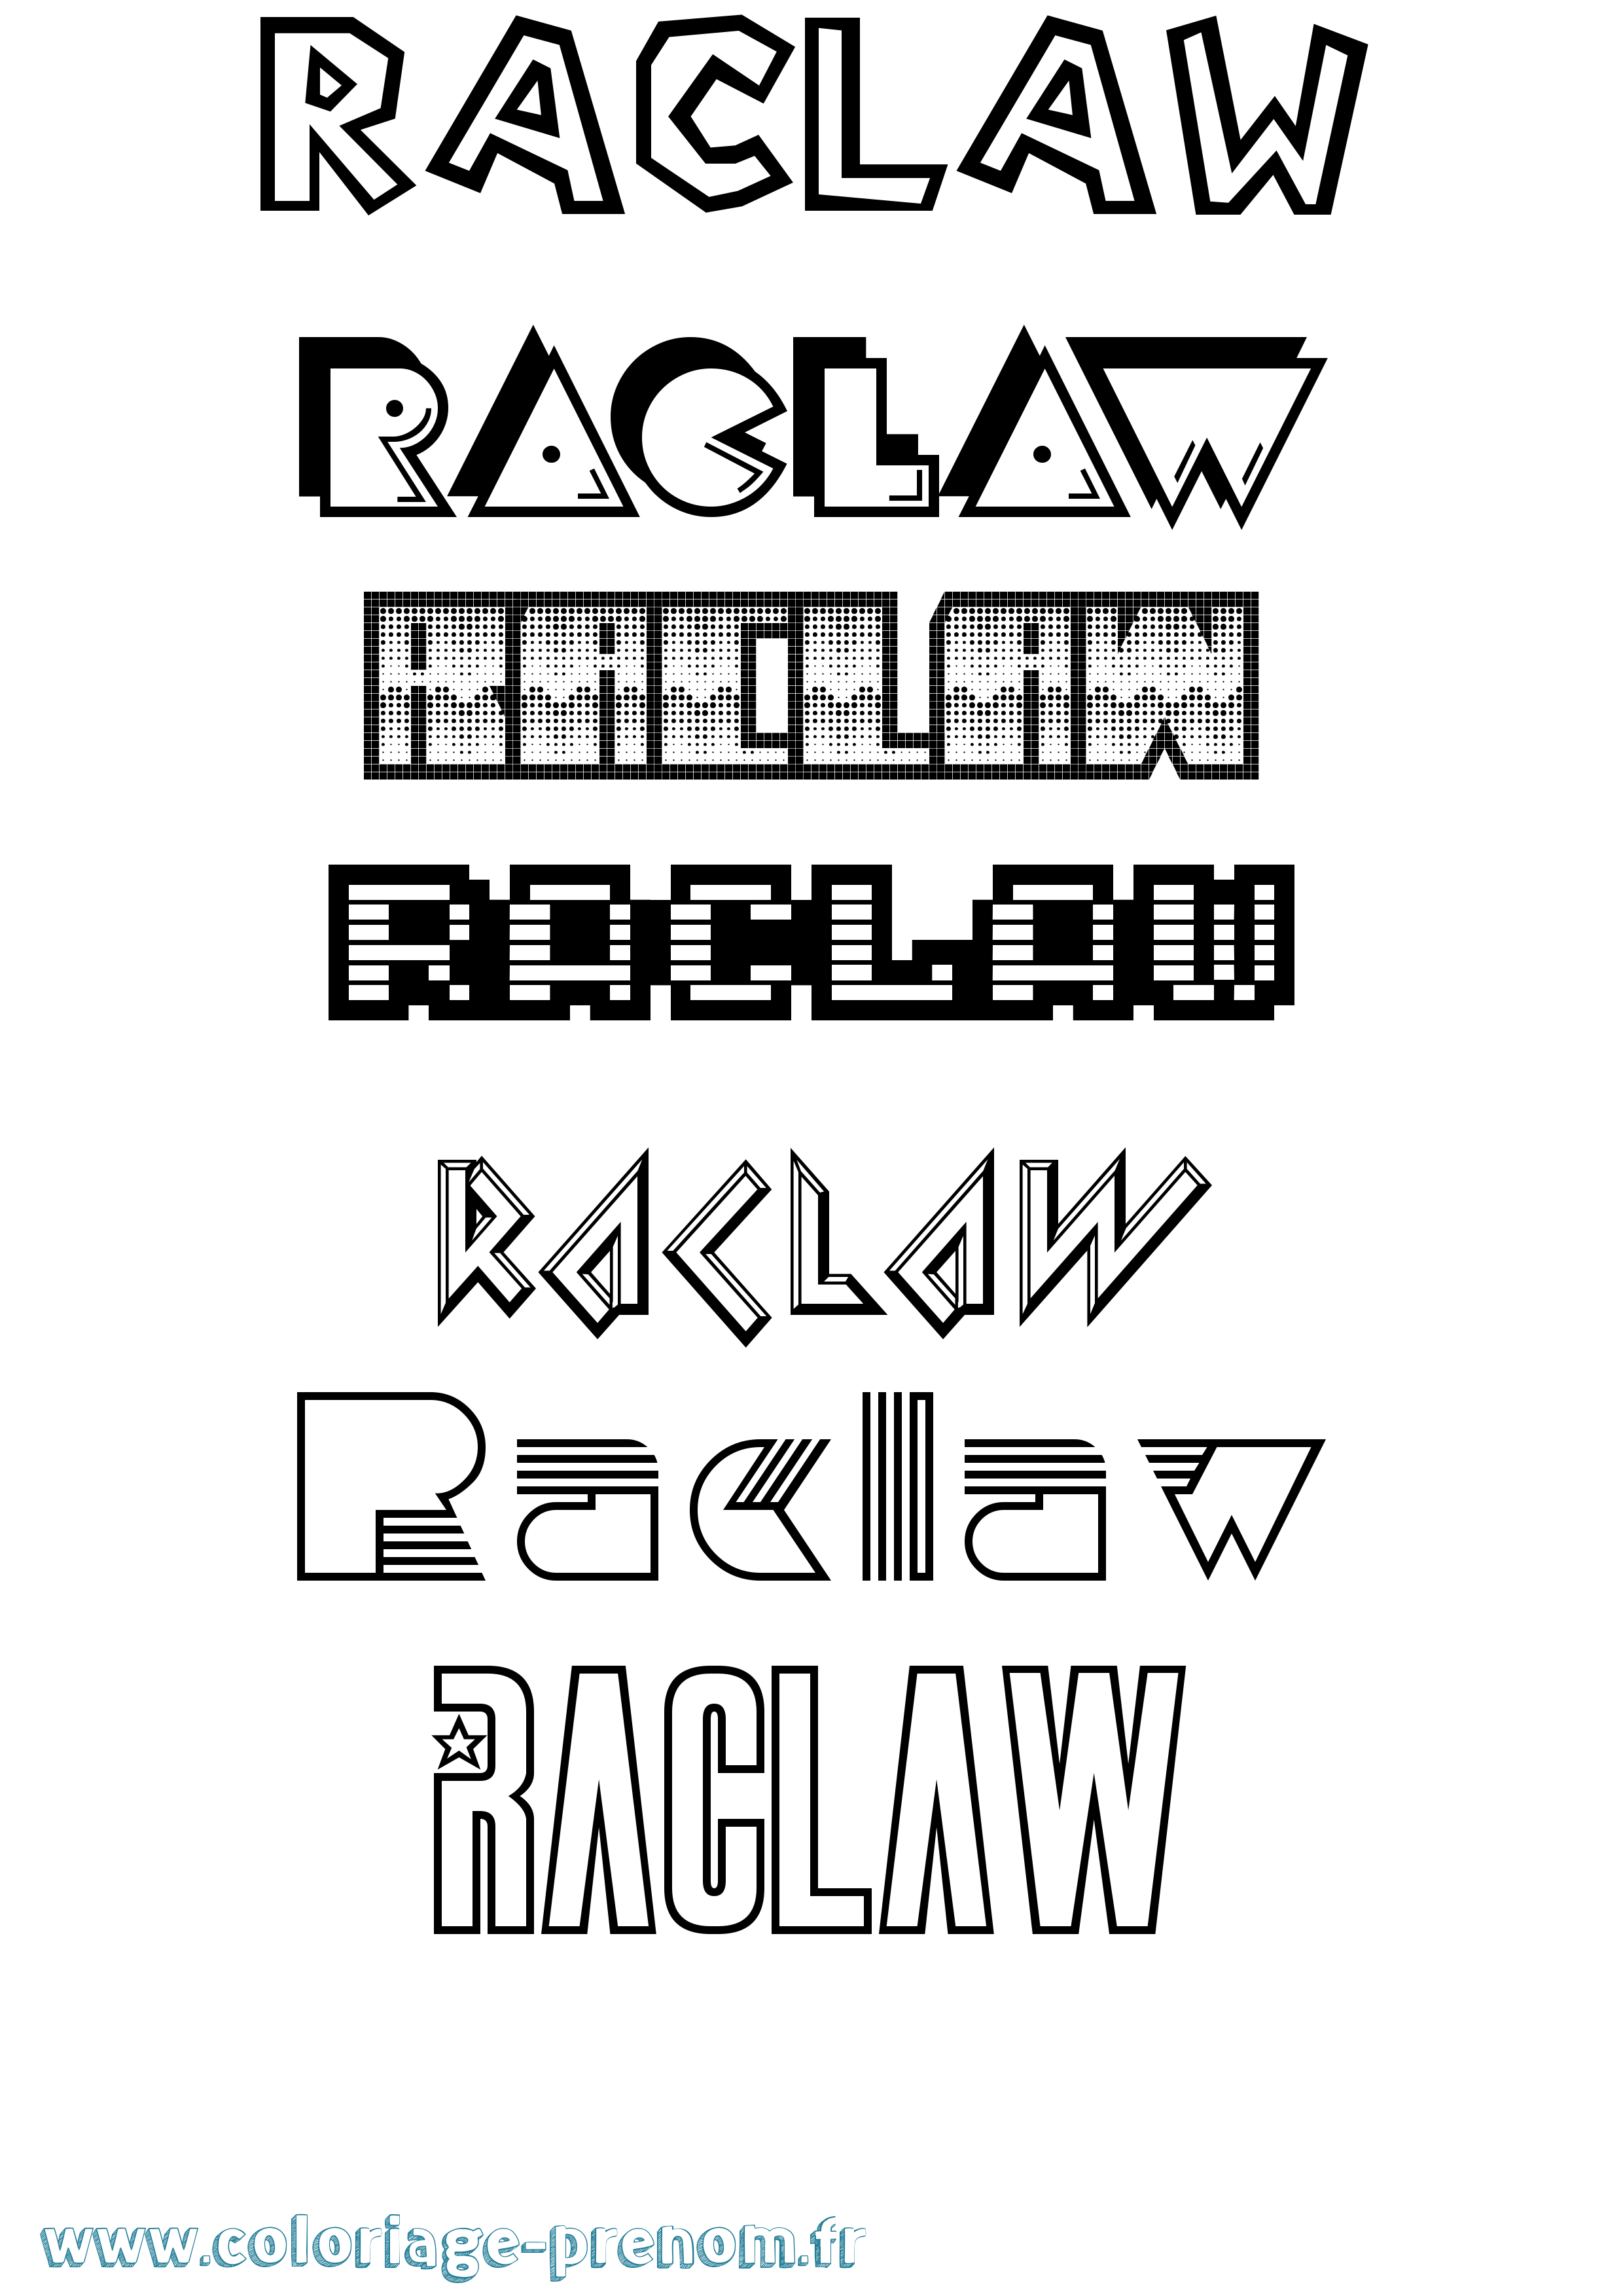 Coloriage prénom Raclaw Jeux Vidéos